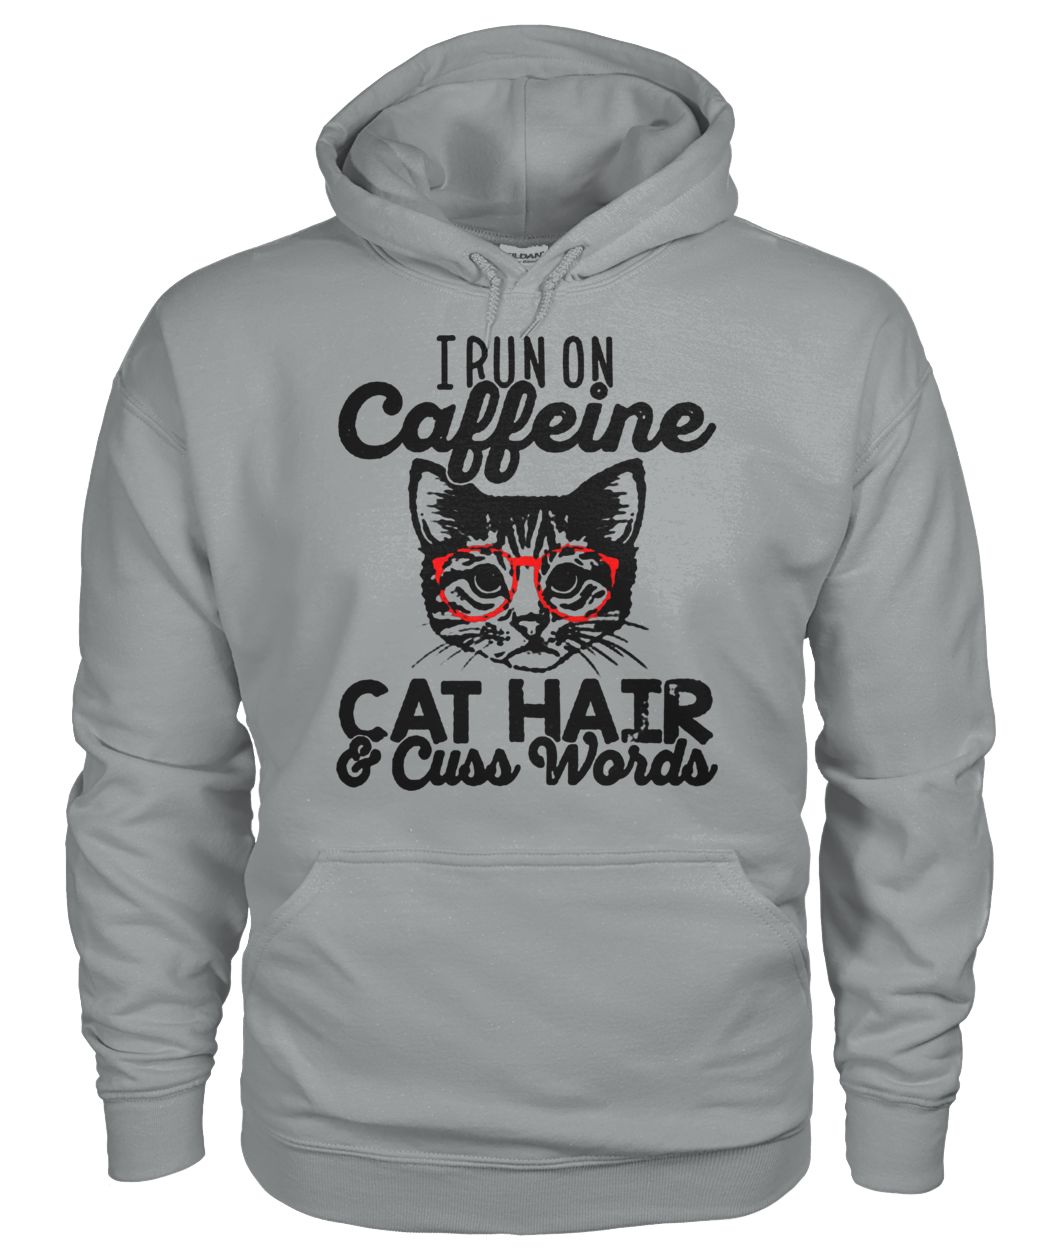 I run on caffeine cat hair and cuss words gildan hoodie